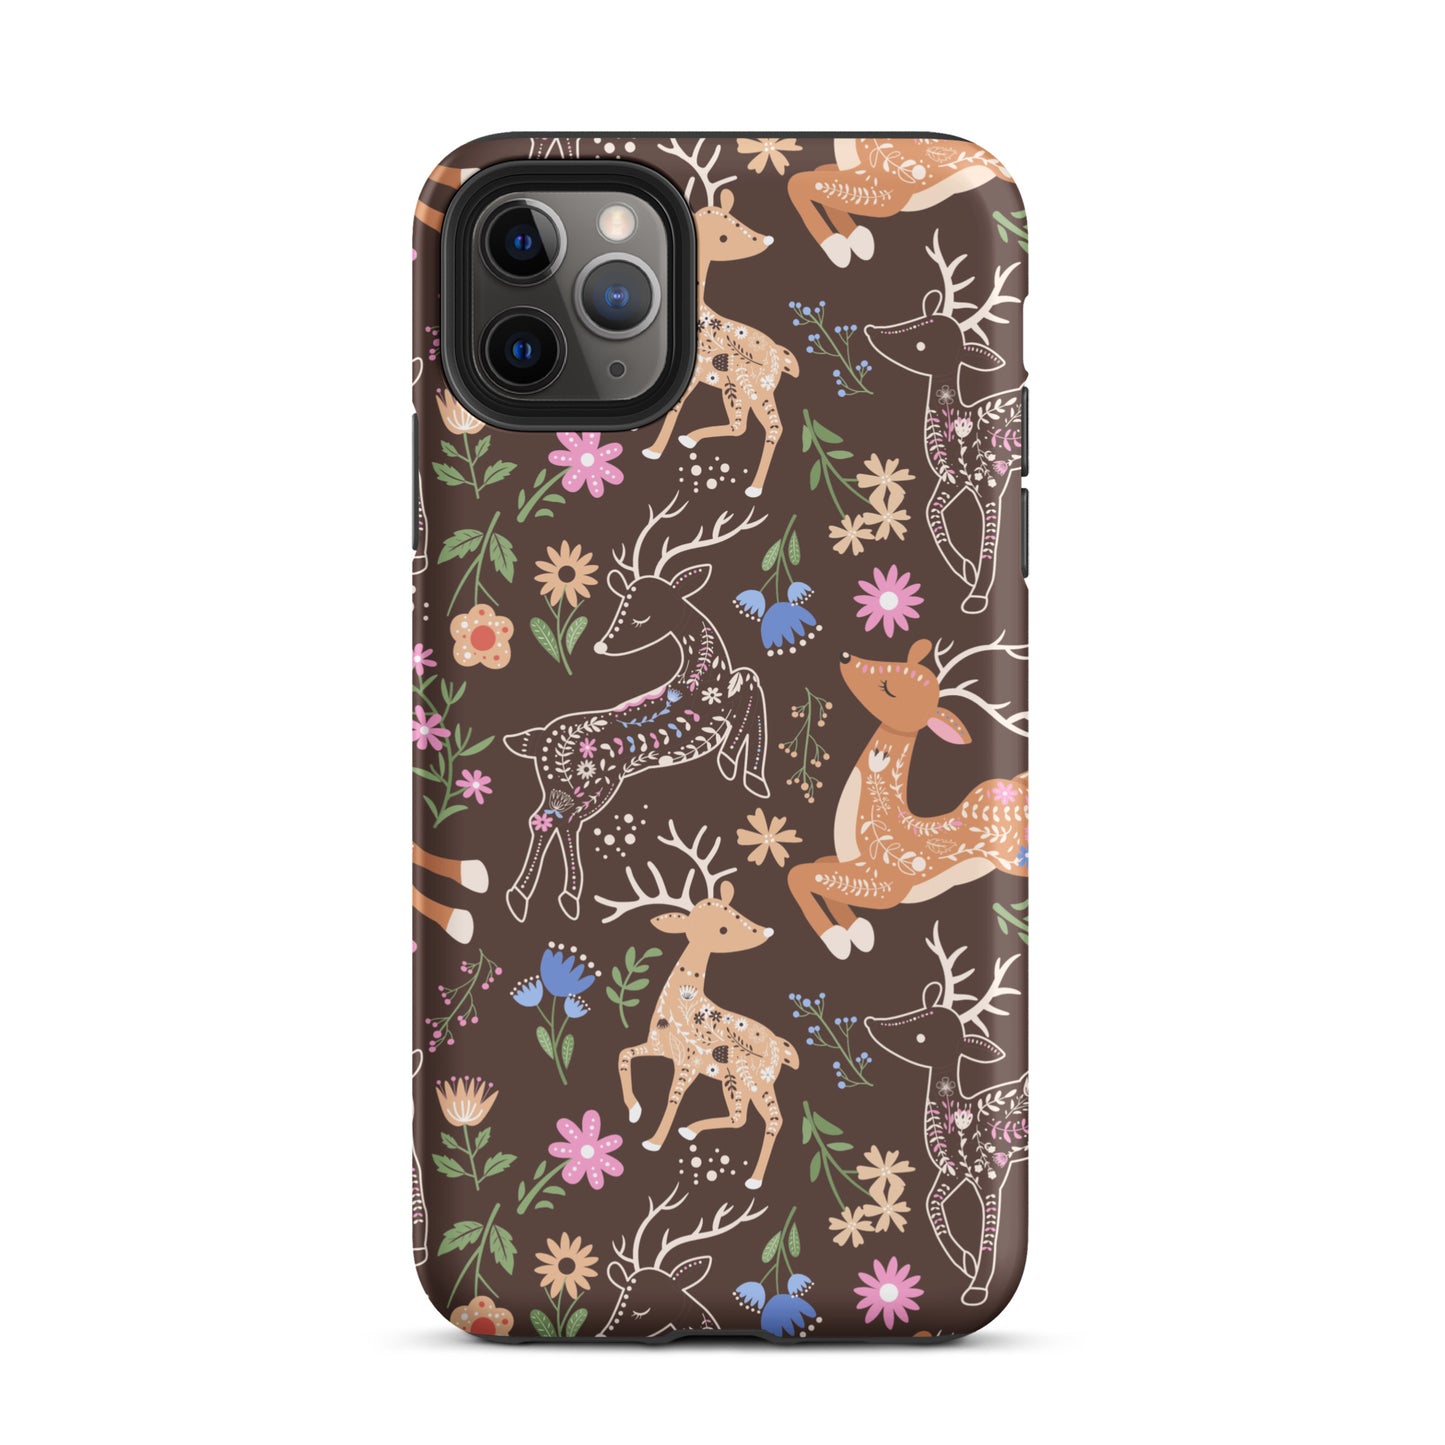 Deer Meadow iPhone Case iPhone 11 Pro Max Matte